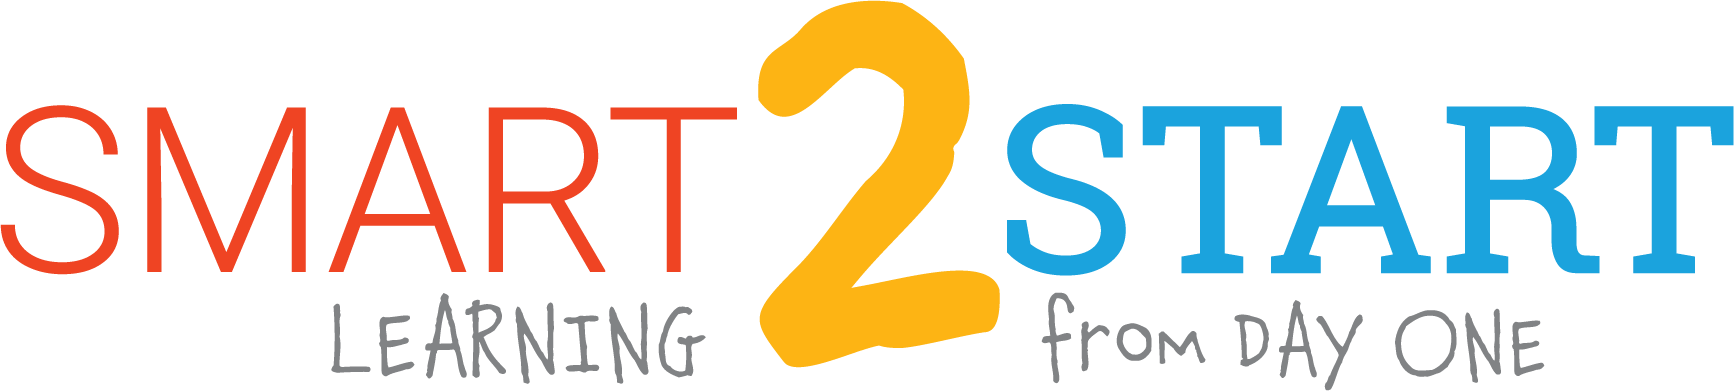 Smart 2 Start logo